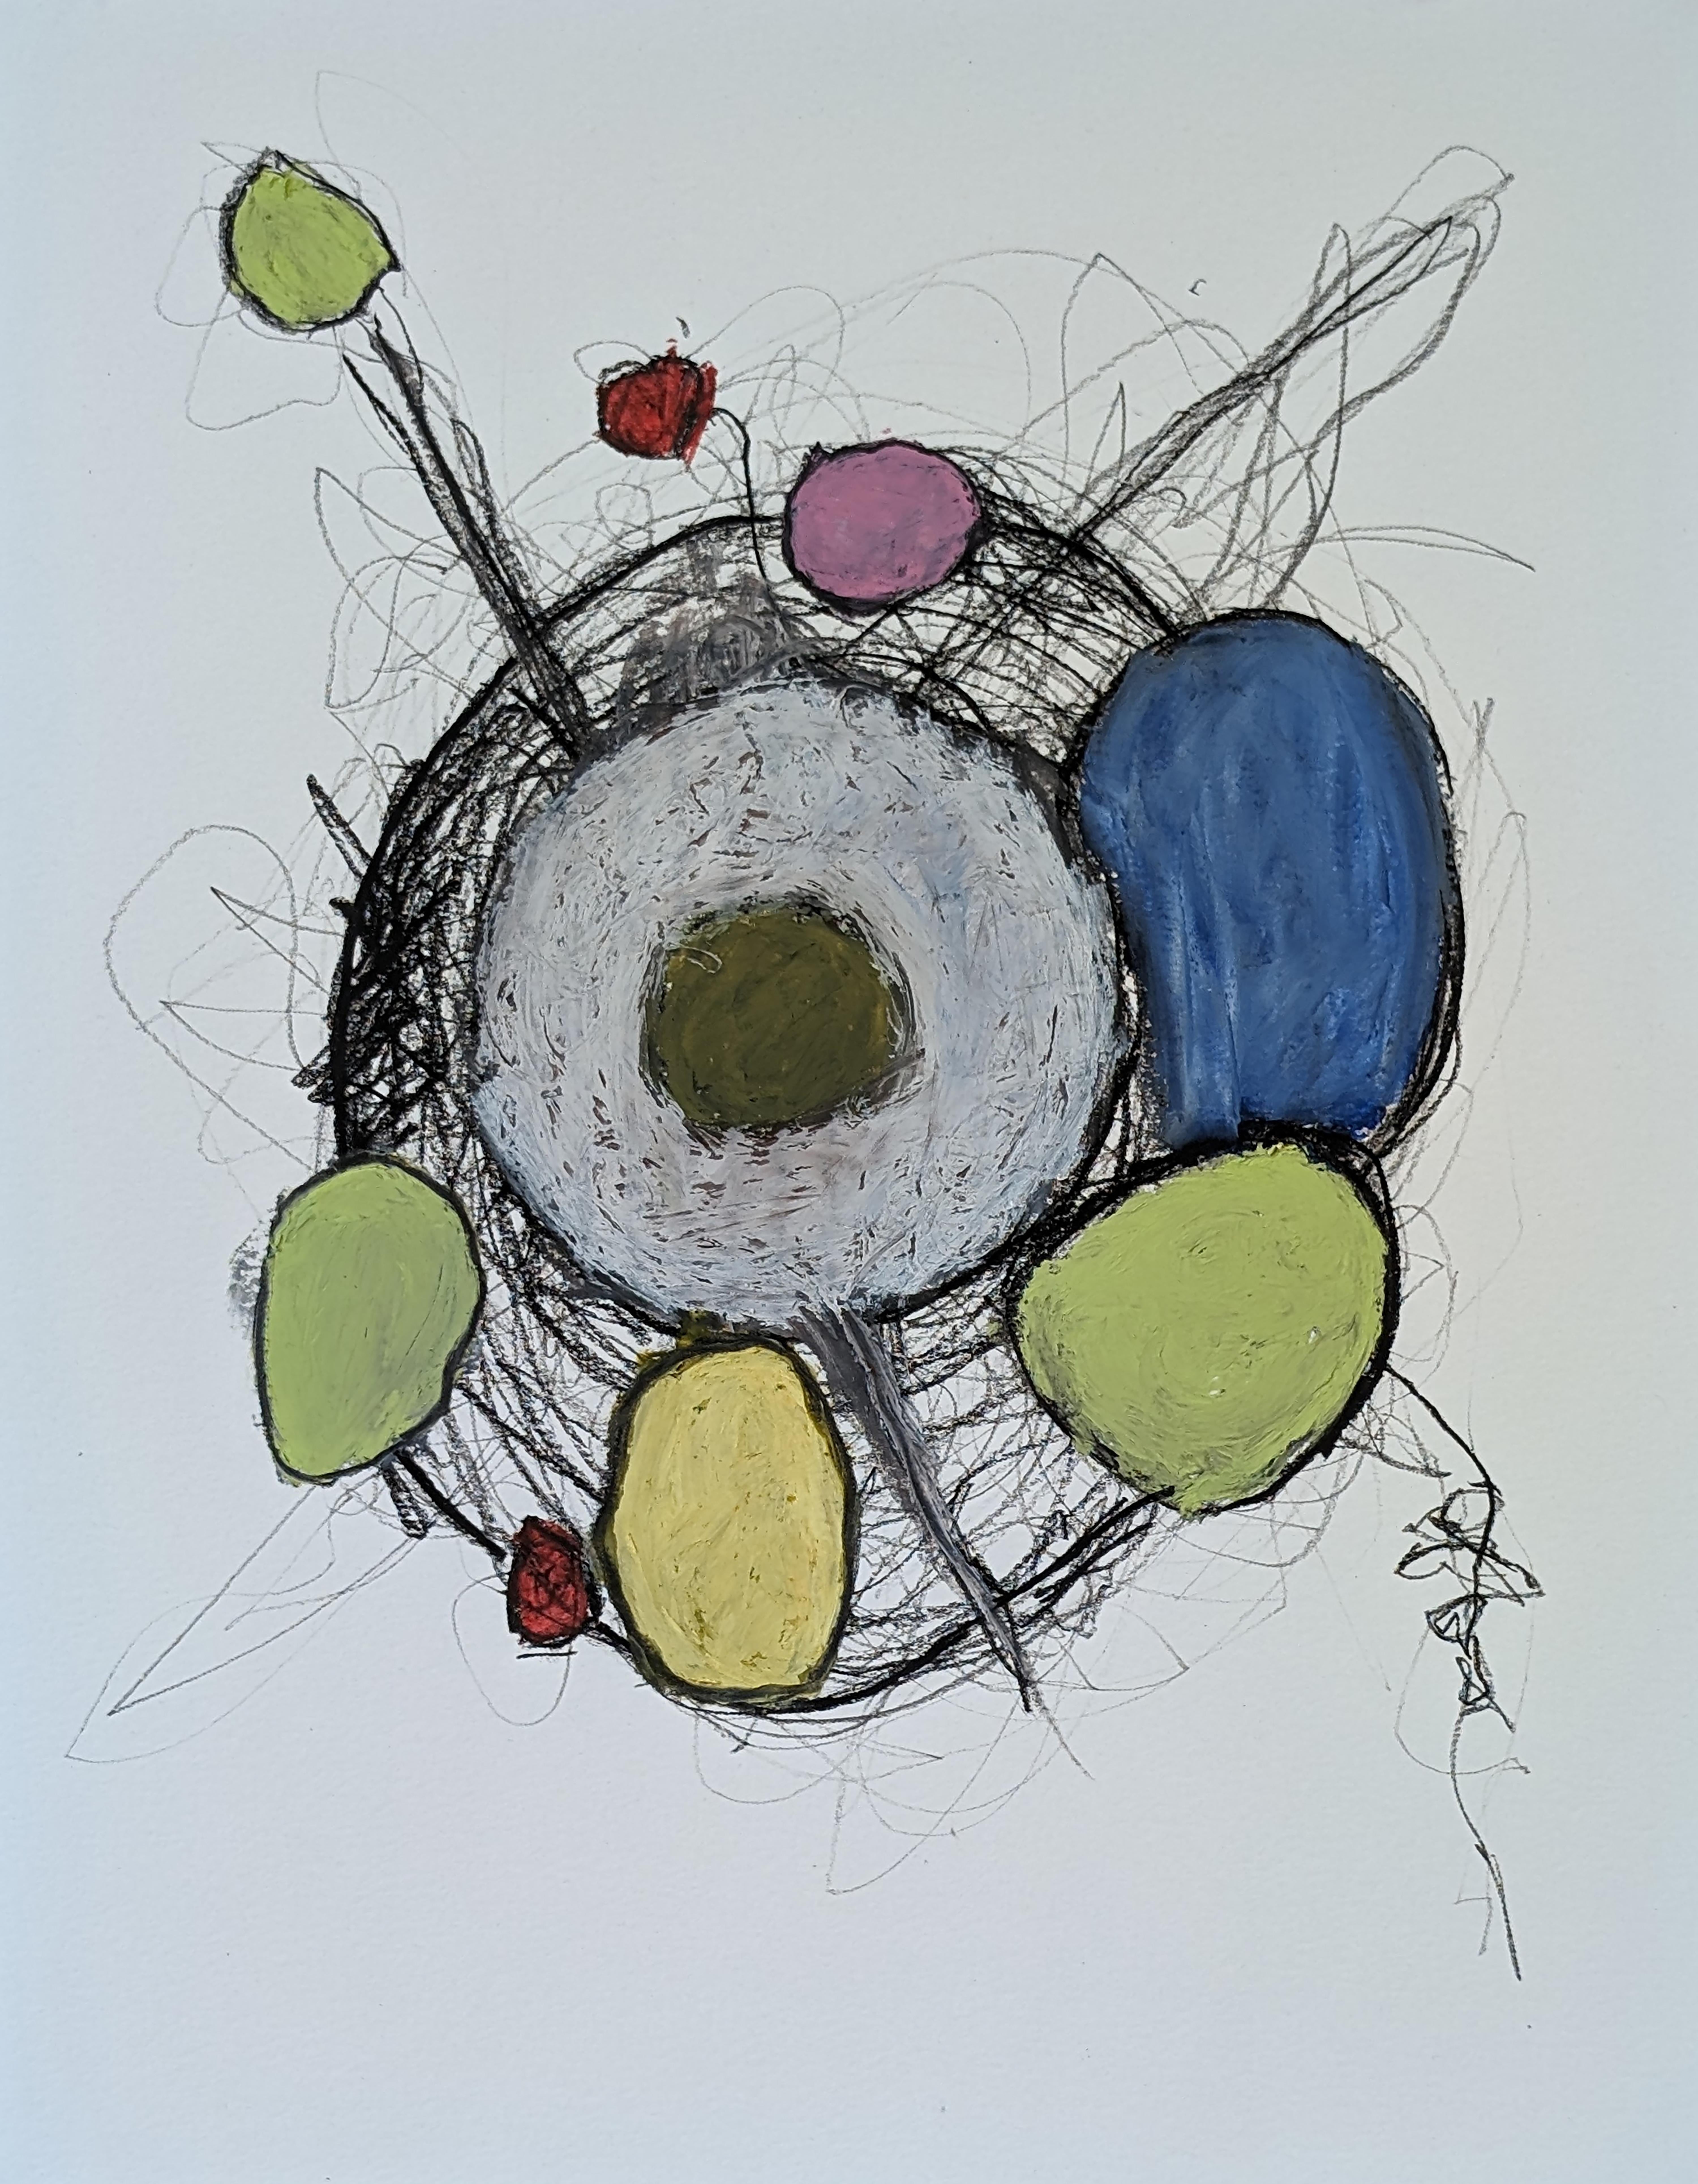 Abstract Drawing Vincent Salvati - "Structures D01" Dessin abstrait contemporain à l'huile sur papier